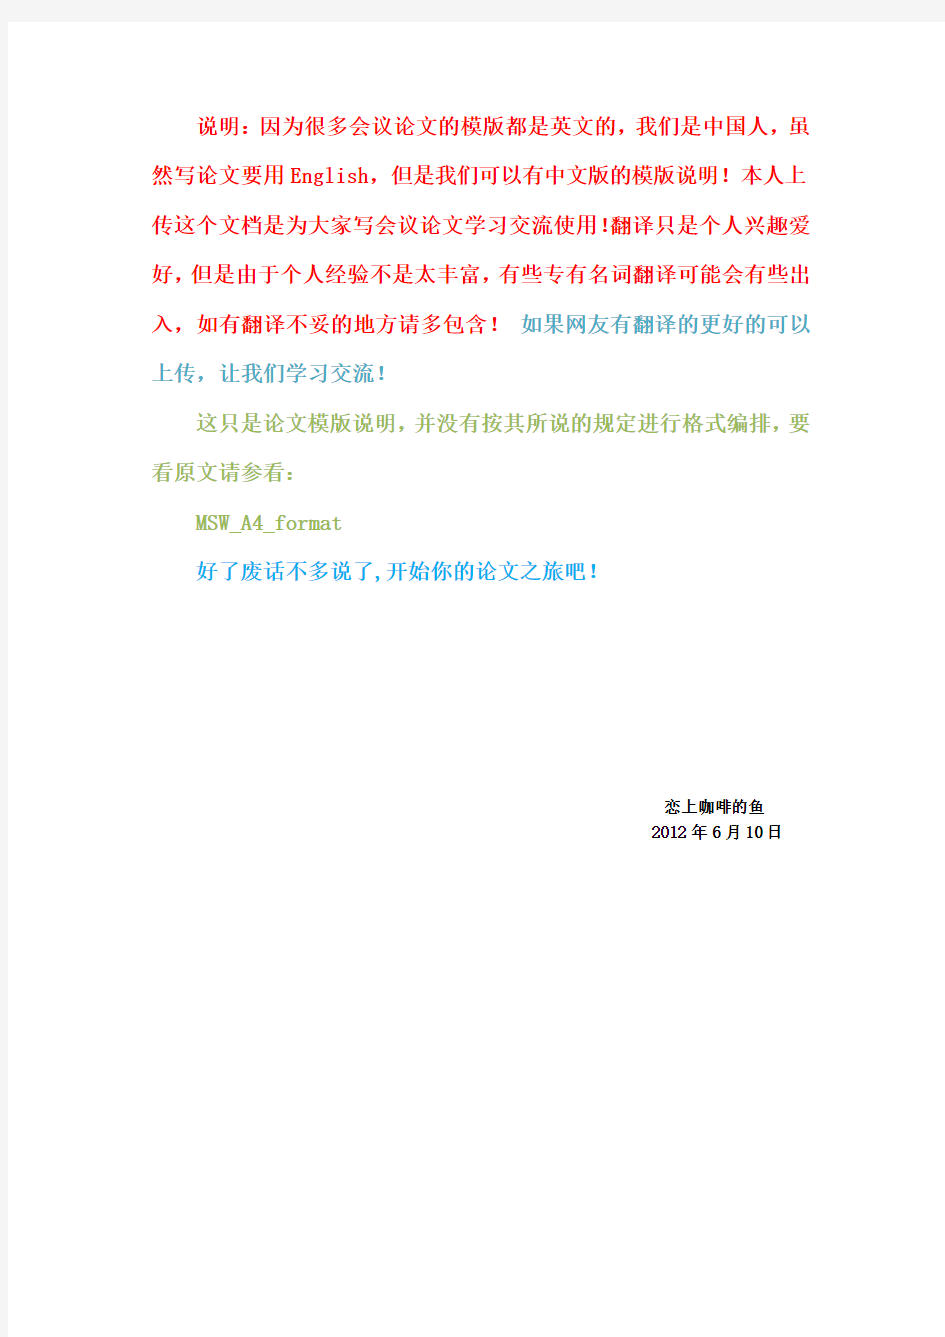 EI 会议论文格式模版(中文)